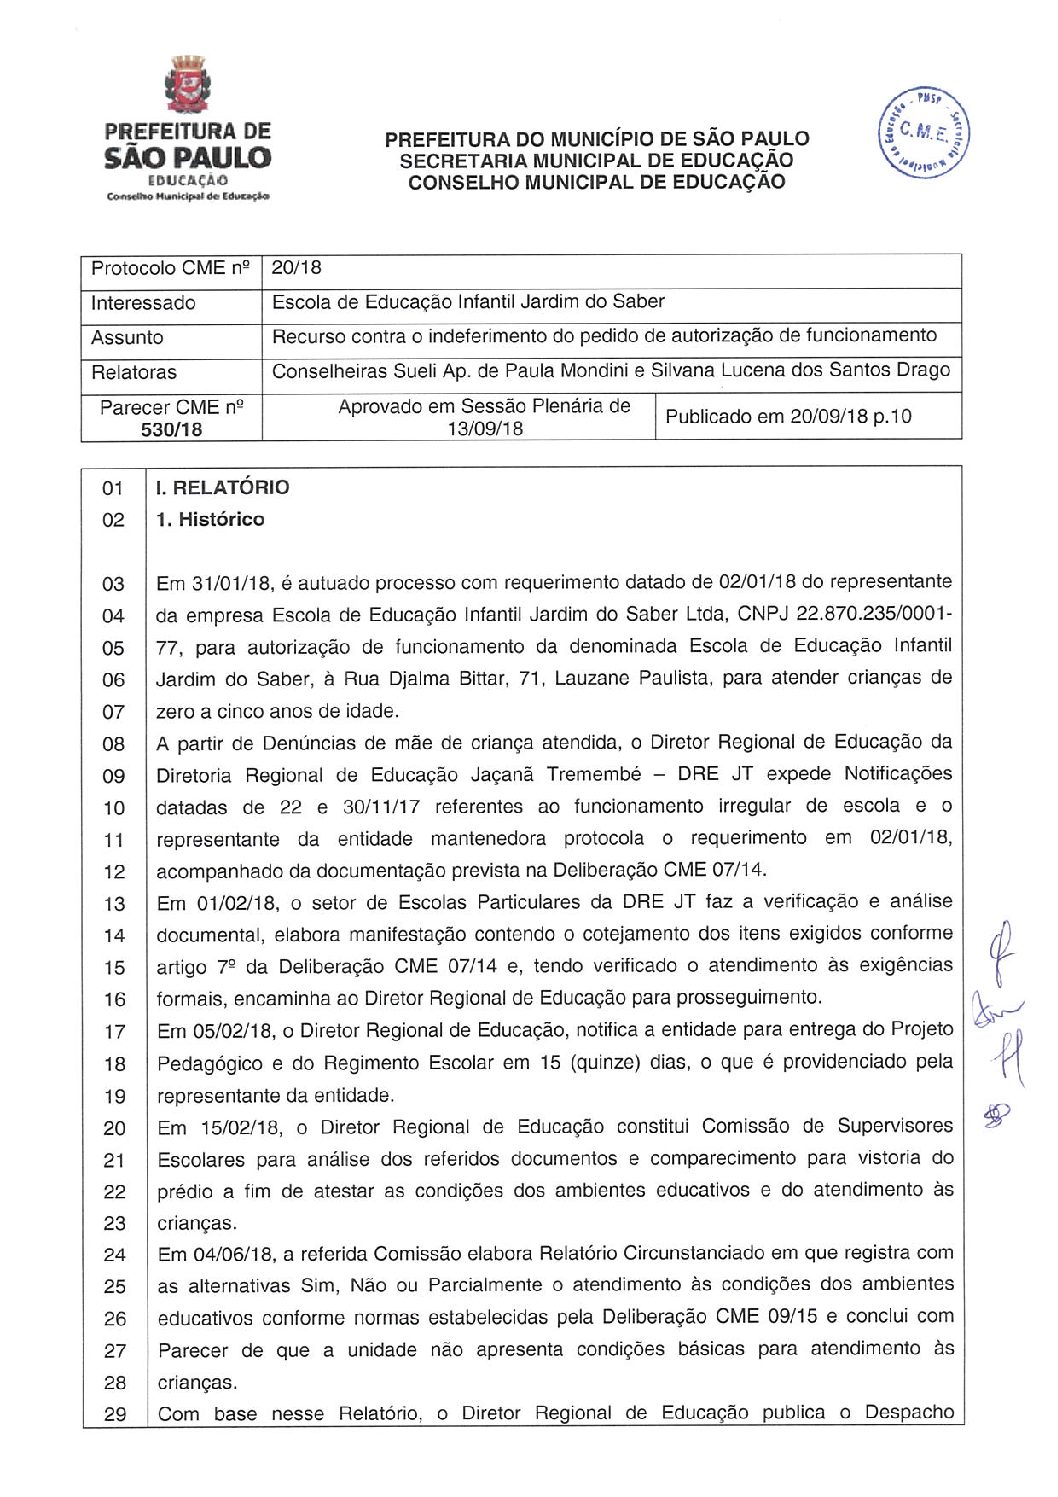 Parecer CME nº 530/2018 - Escola de Educação Infantil Jardim do Saber (DRE Jaçanã/Tremembé) - Recurso contra o indeferimento do pedido de autorização de funcionamento